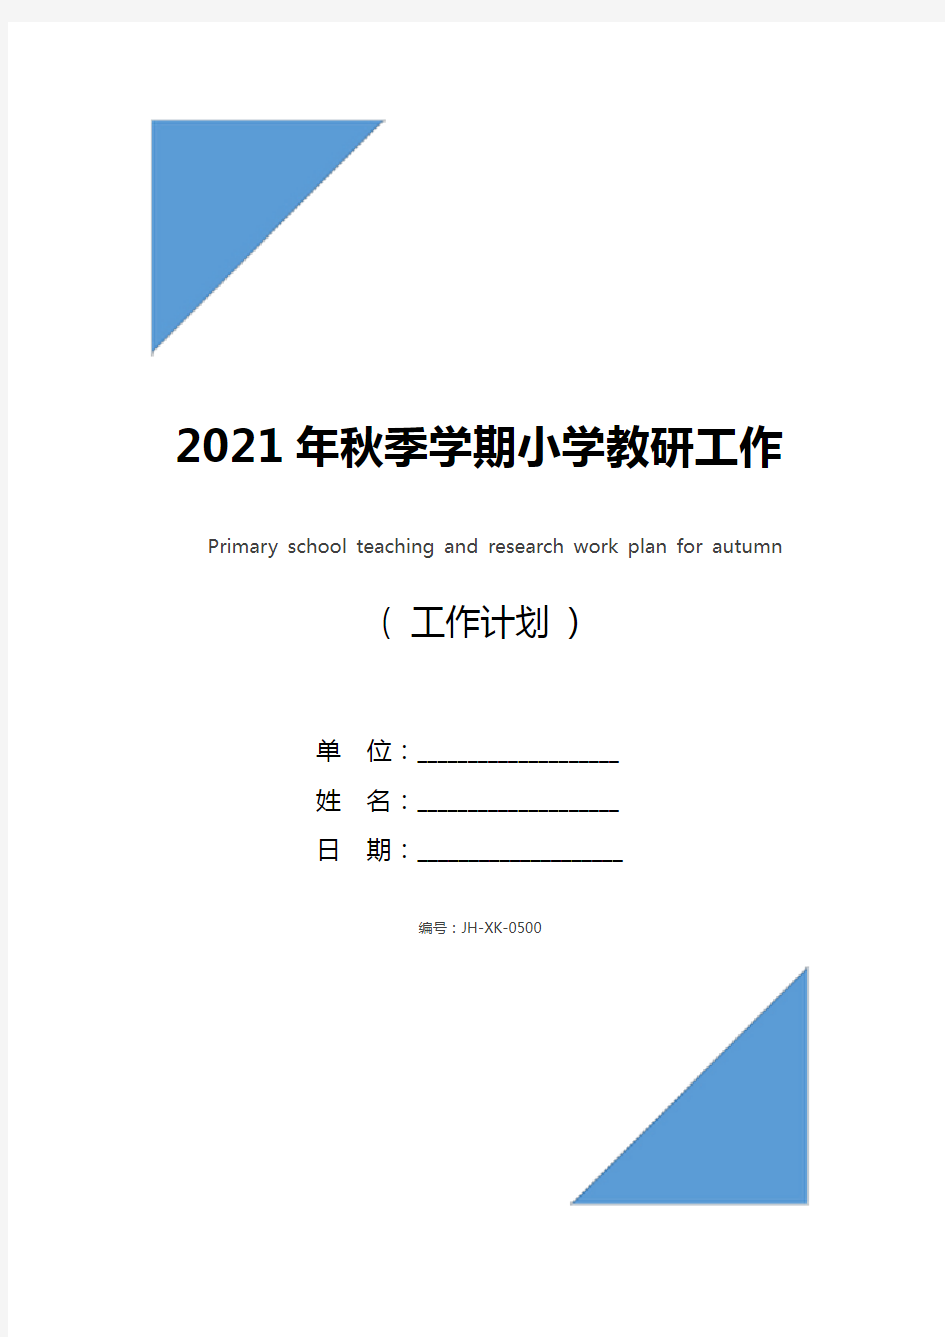 2021年秋季学期小学教研工作计划(新版)